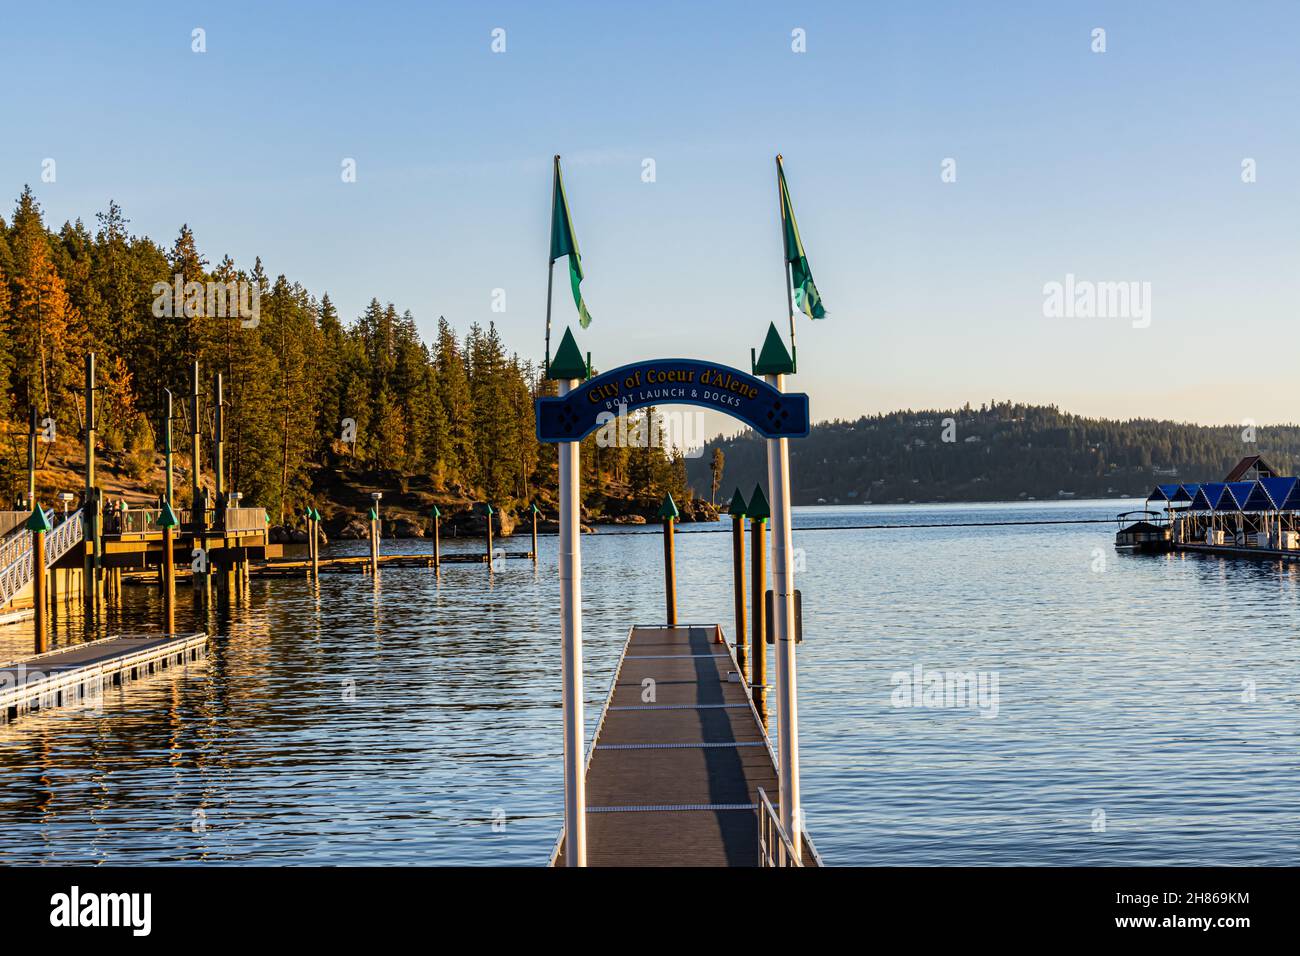 Blue Boat glisse à Marina sur le lac coeur d'Alene, coeur d'Alene, Idaho, Etats-Unis Banque D'Images